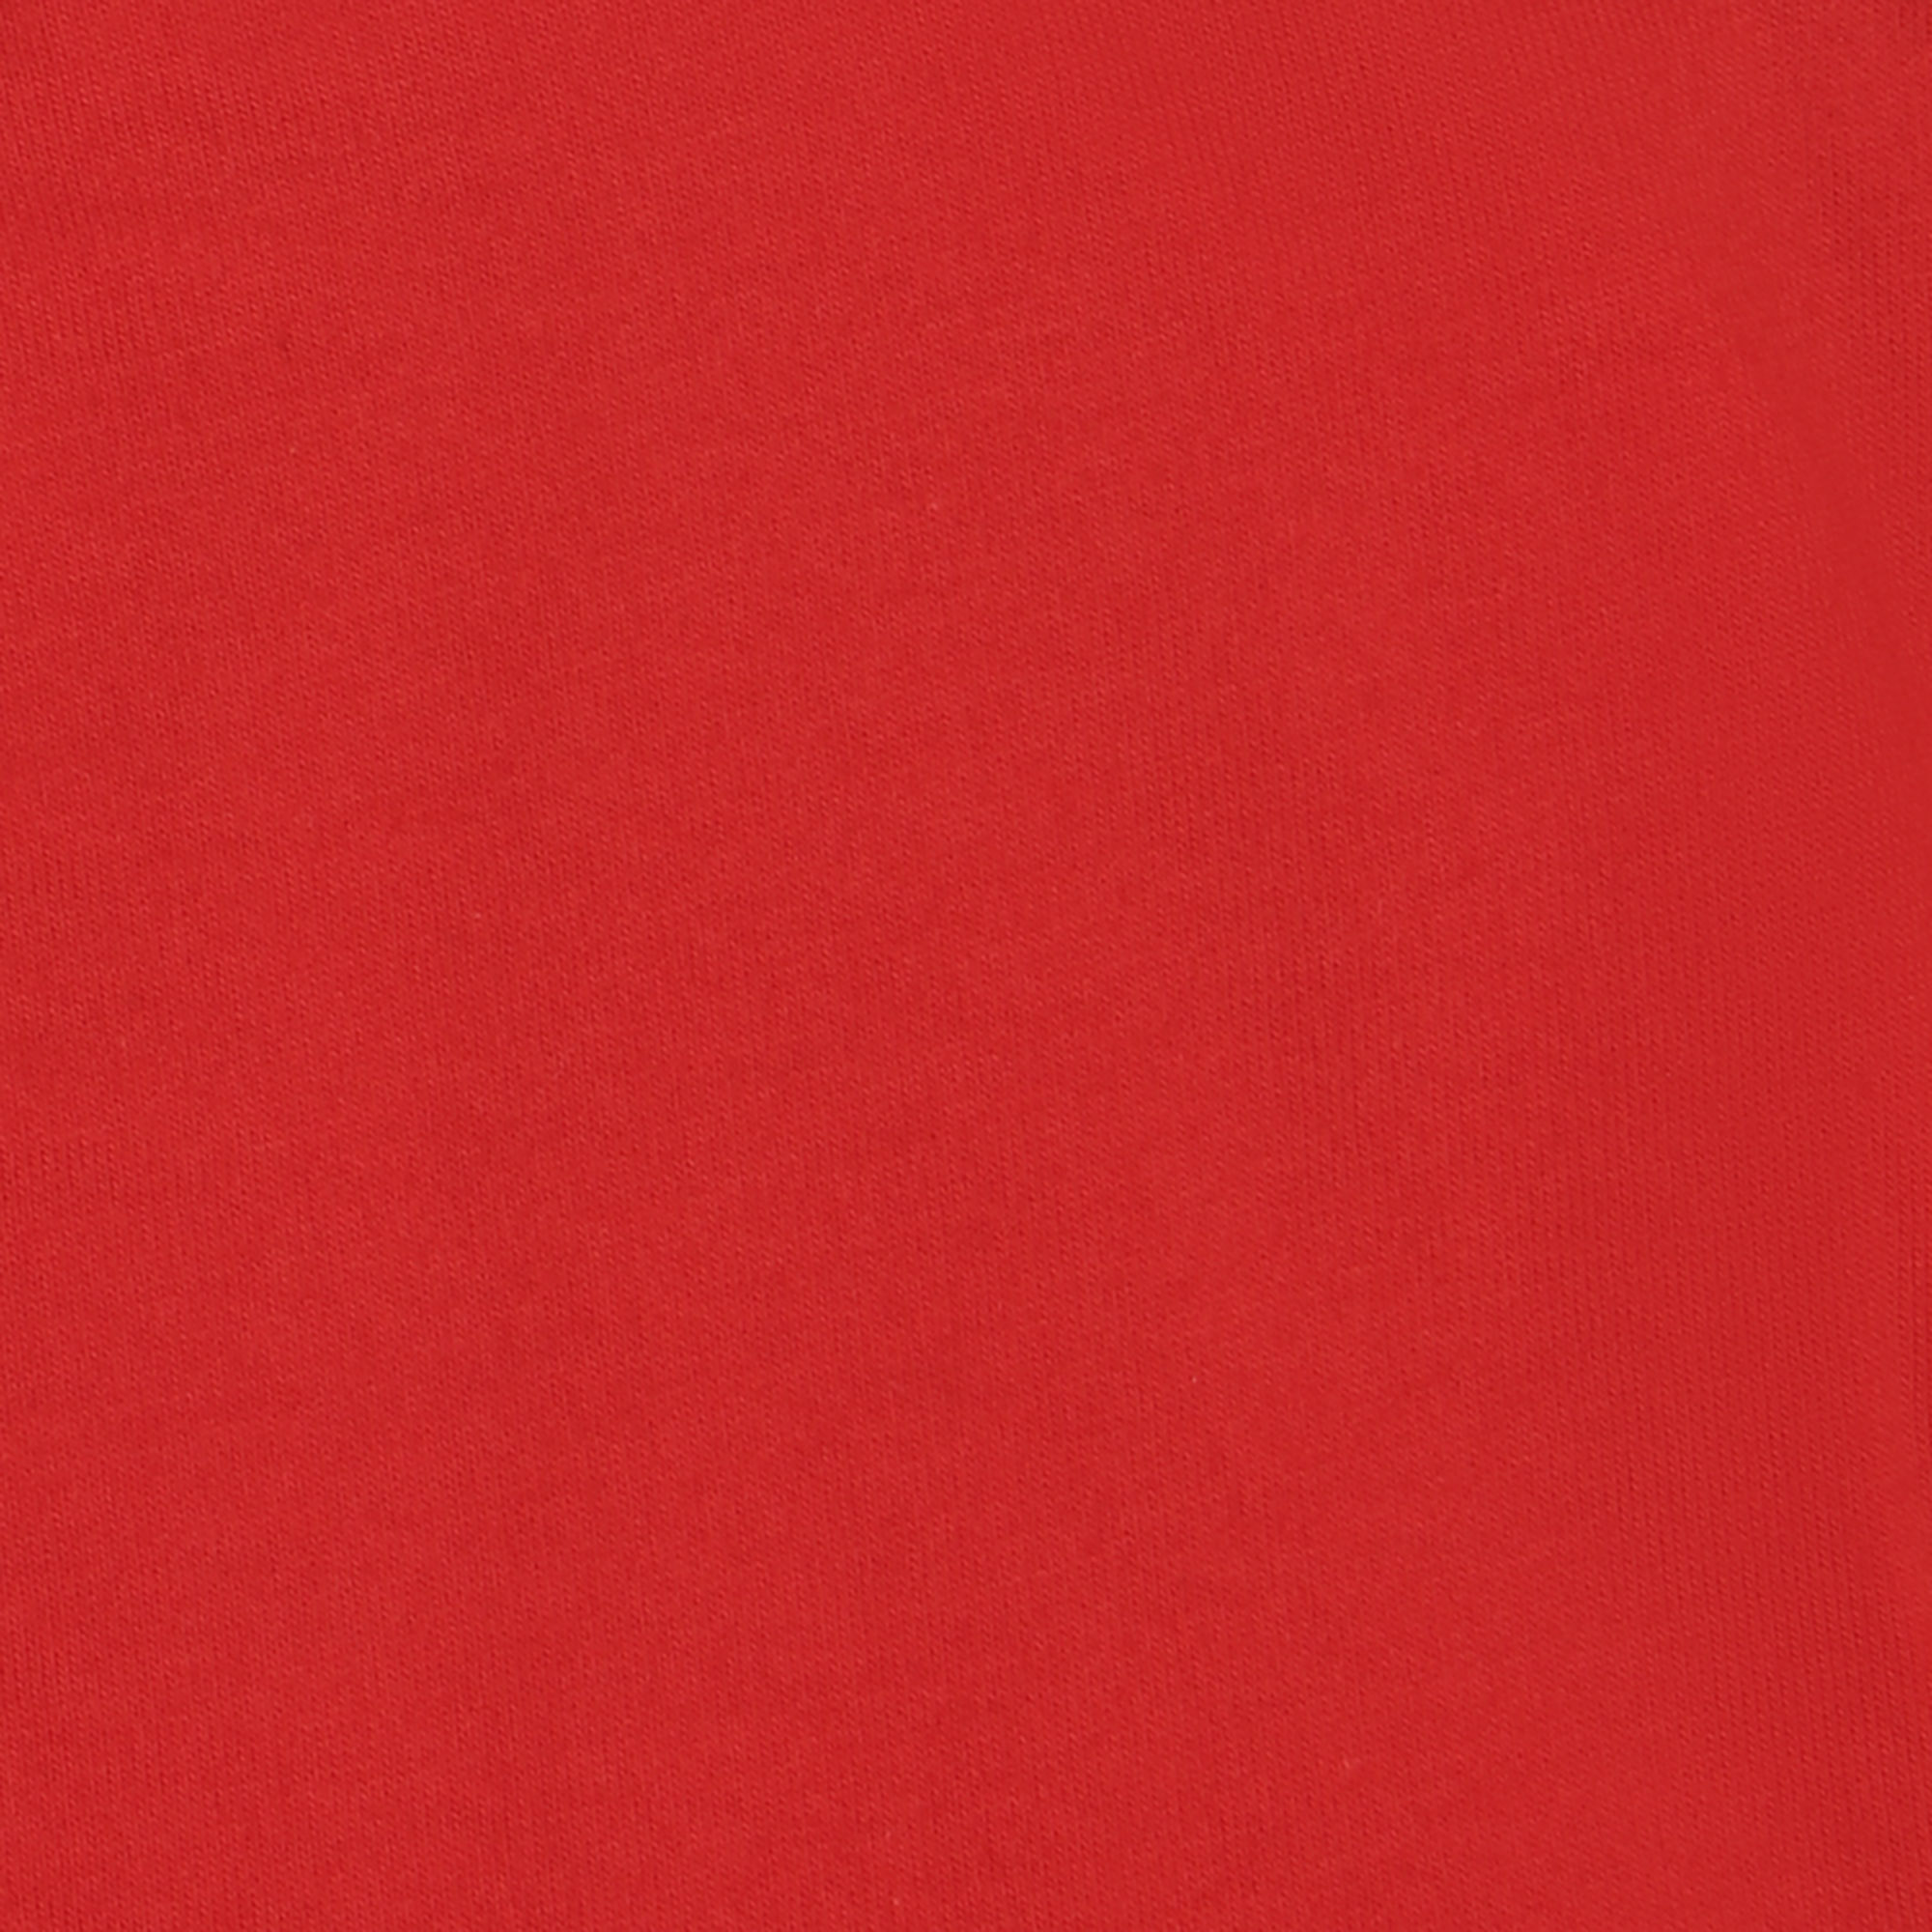 Мужская футболка Pantelemone MF-913 54 красная, цвет красный, размер 54 - фото 3